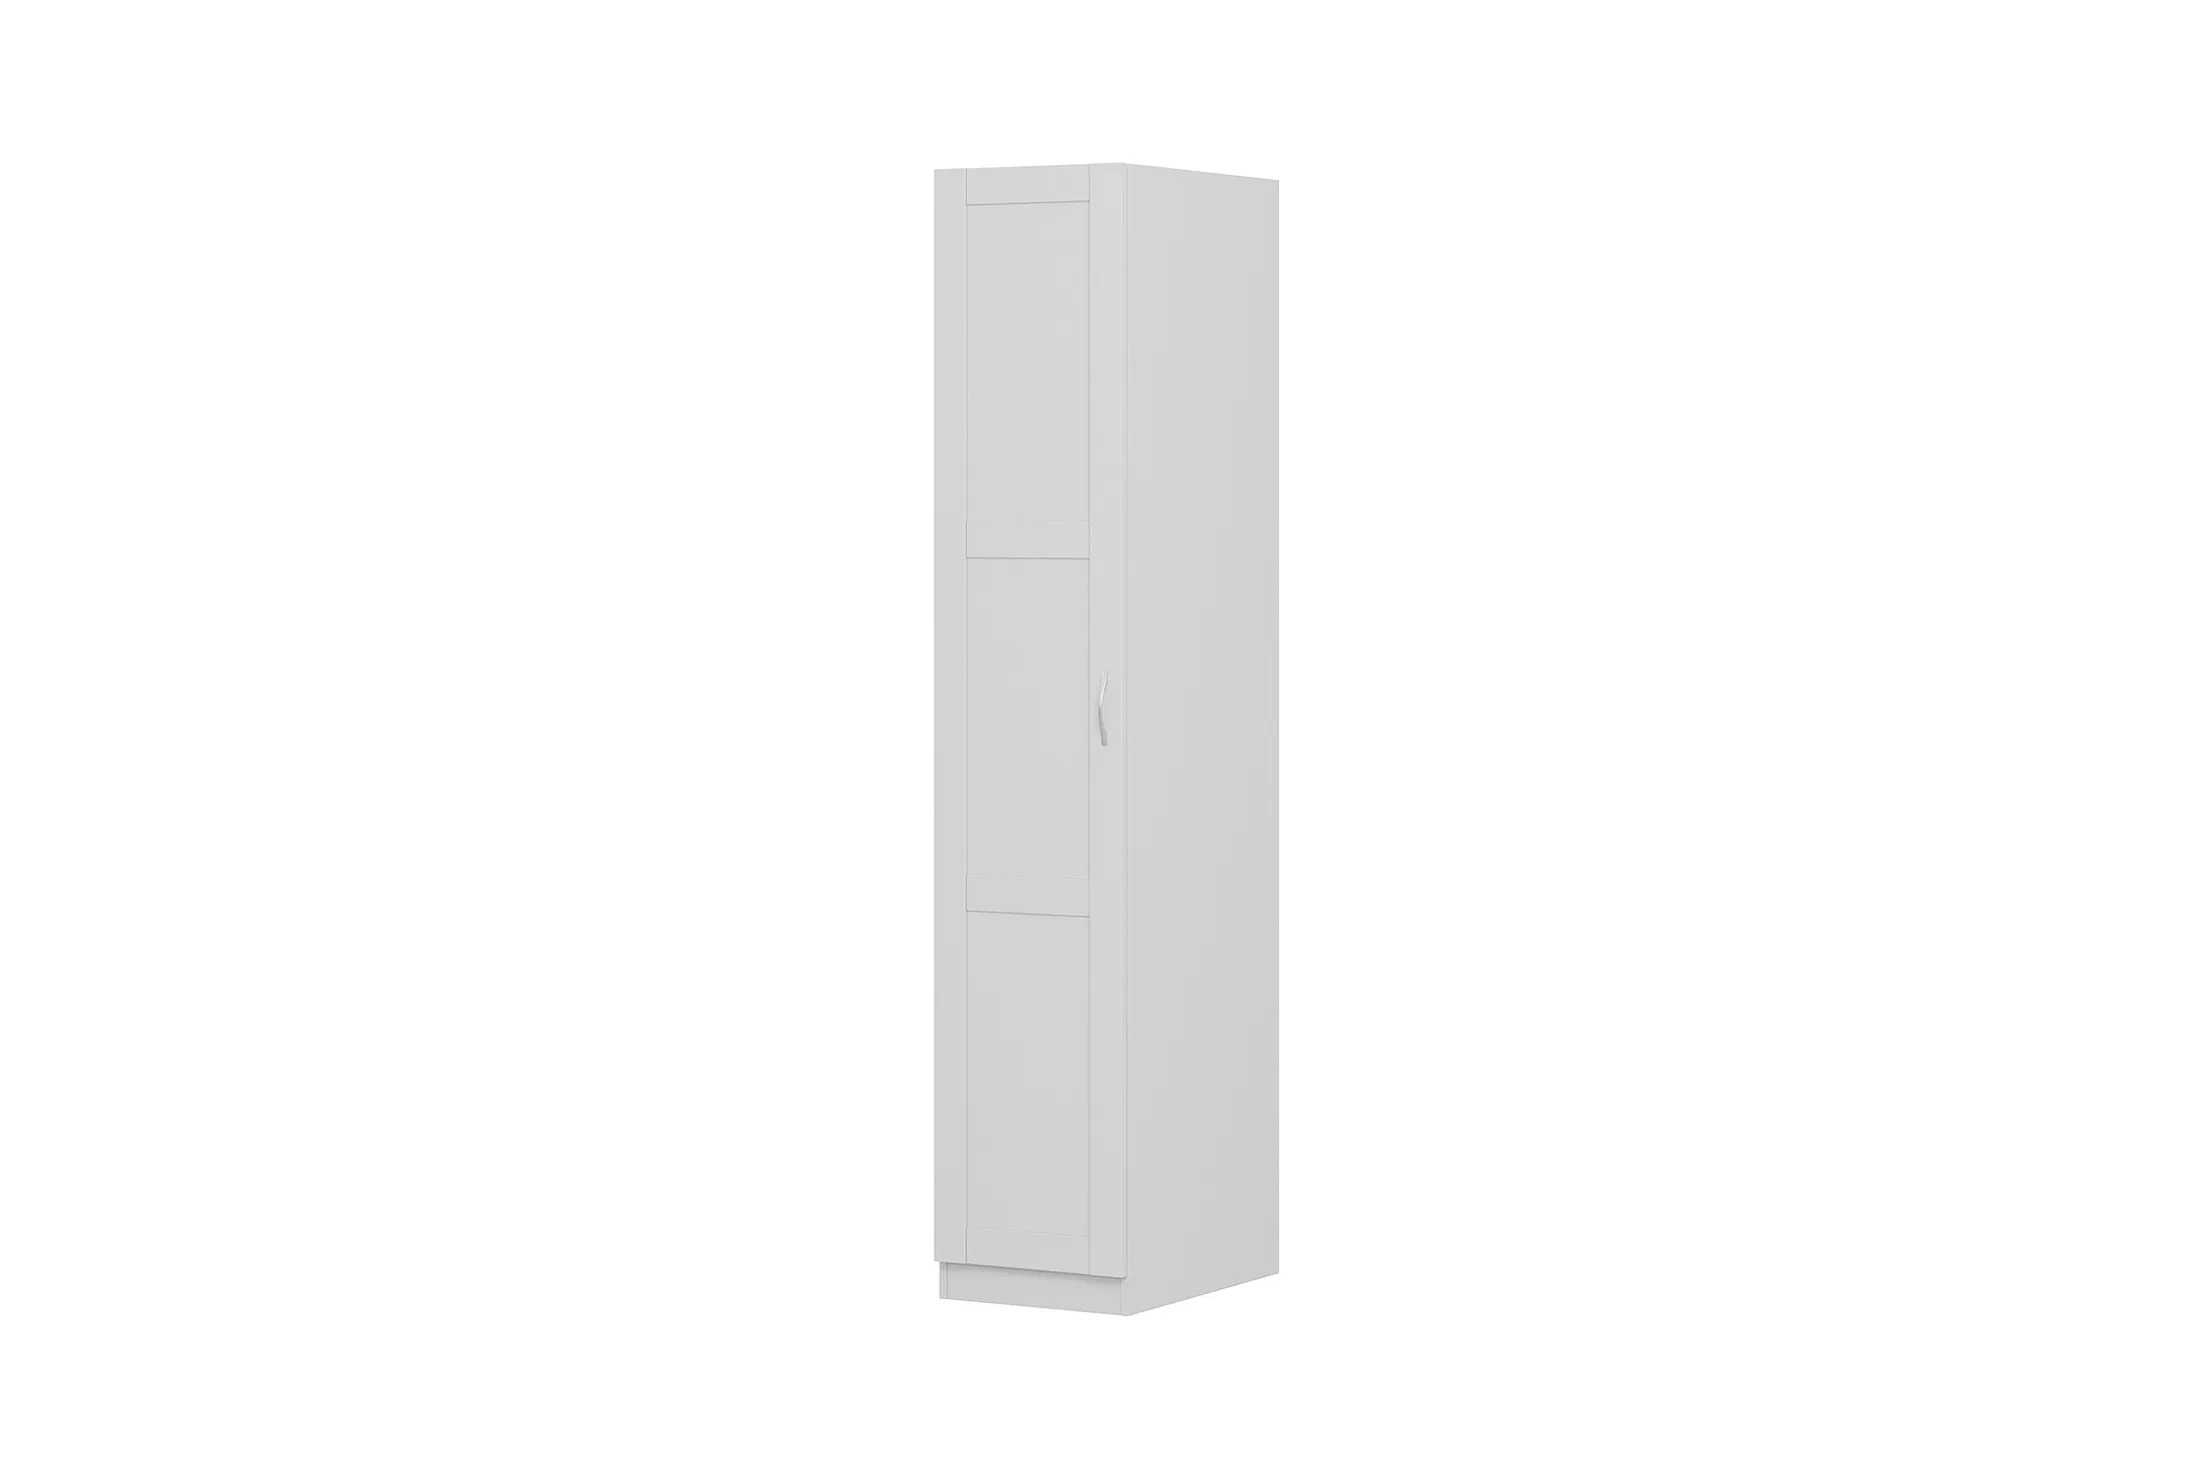 Пенал Пегас 1 дверь - аналог IKEA BRIMNES,39х58х202,белый